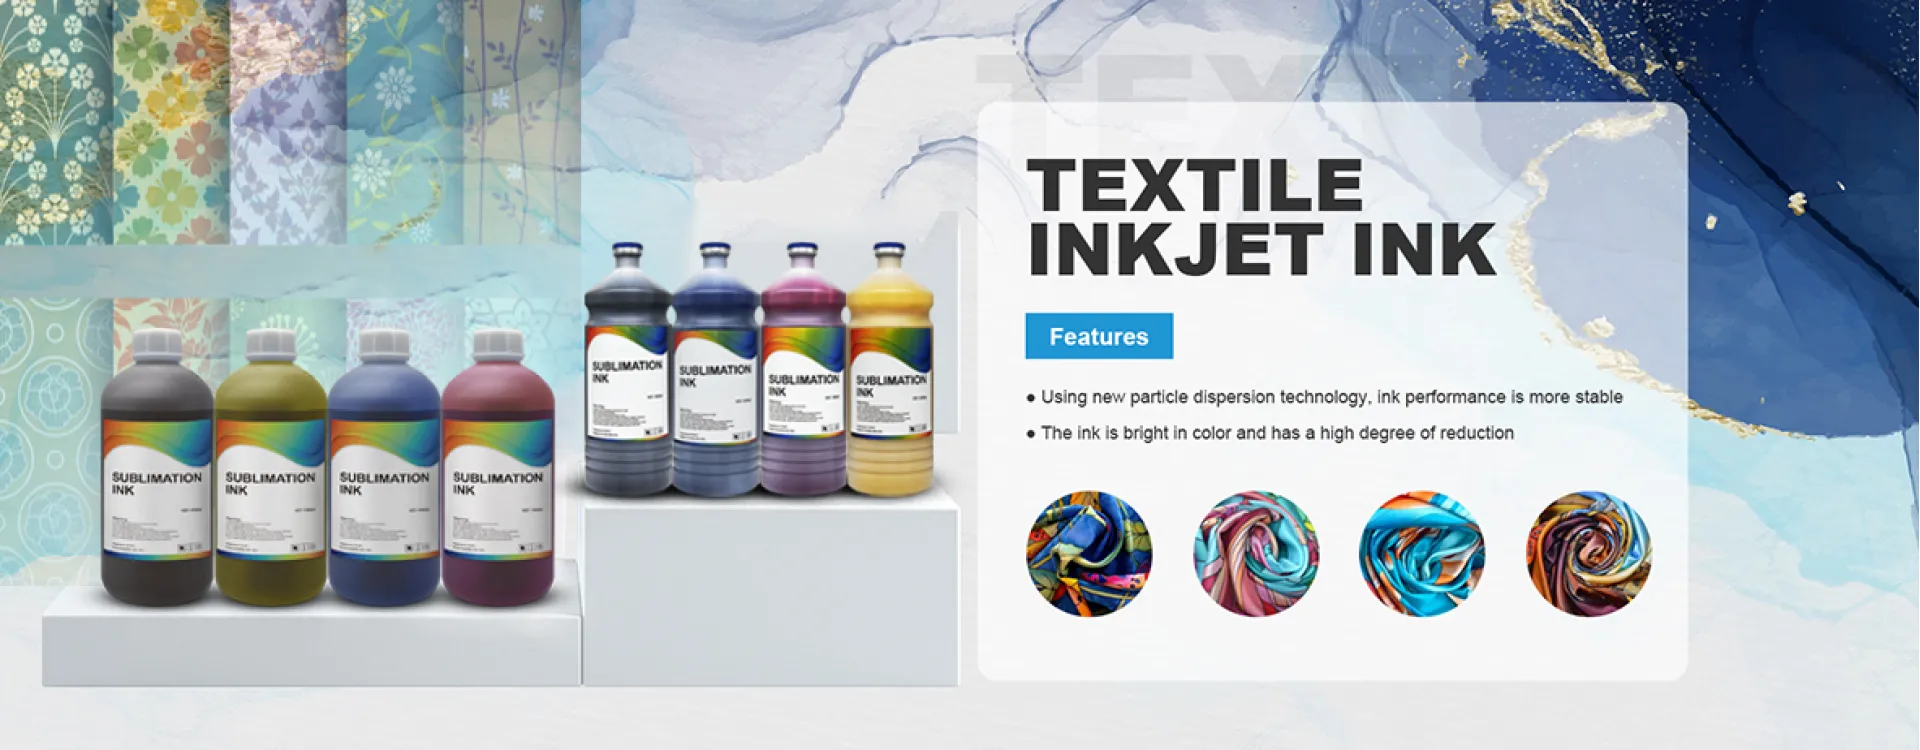 Textile Inkjet Ink